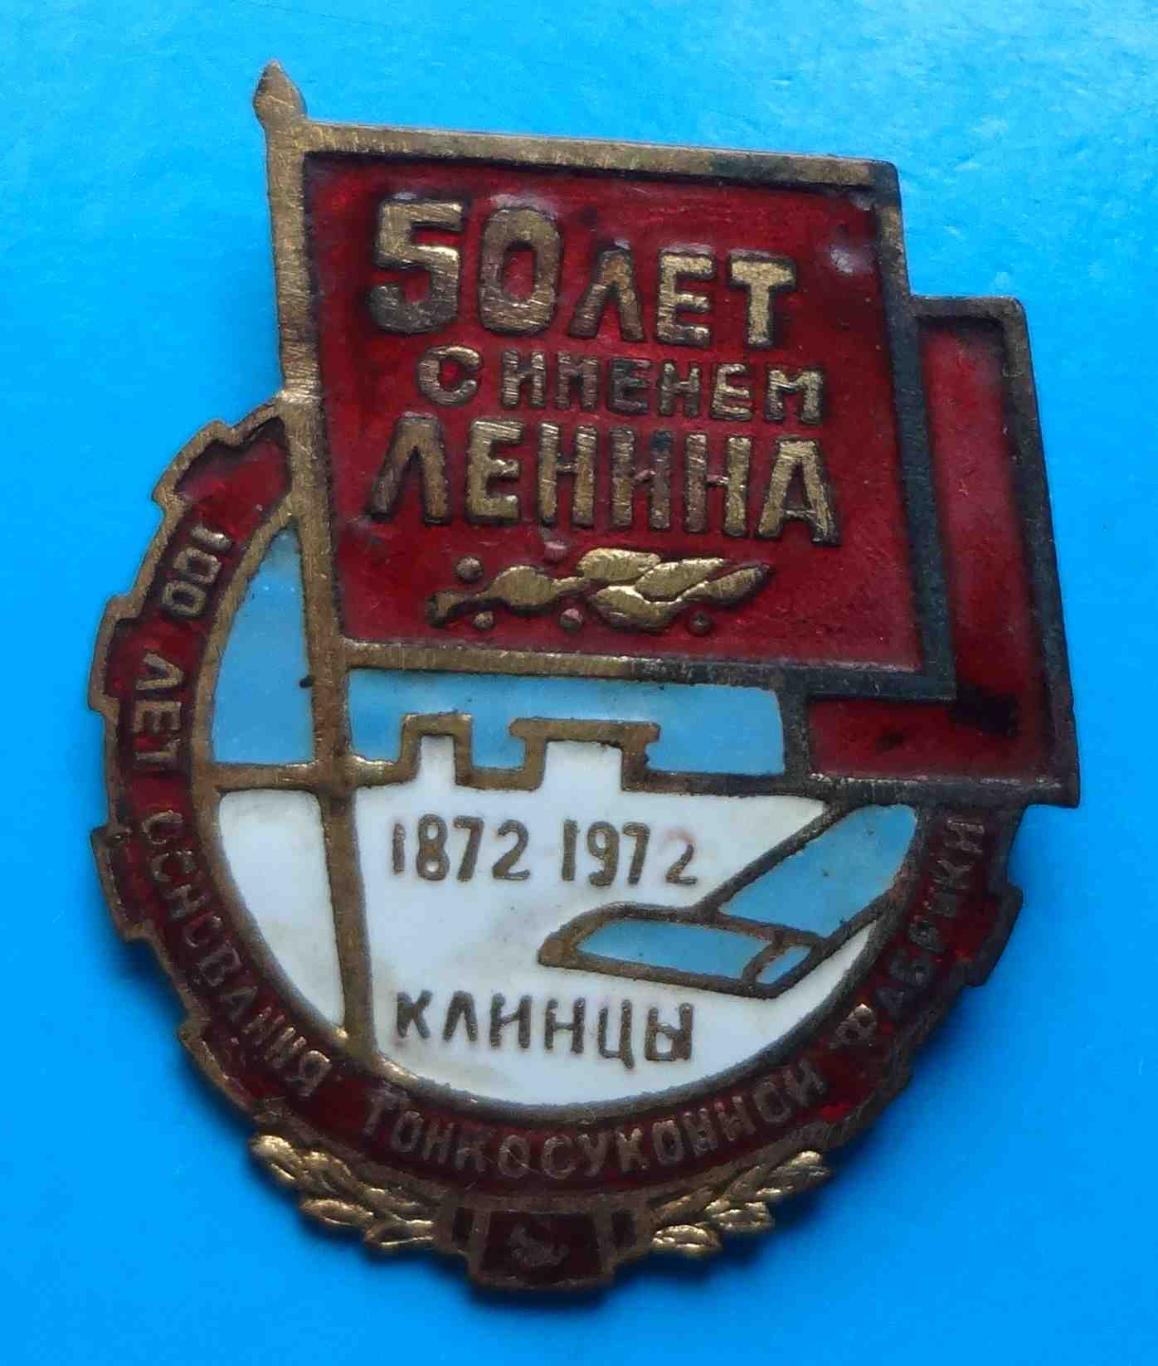 50 лет с именем Ленина 100 лет тонкосуконной фабрике Клинцы 1872-1972